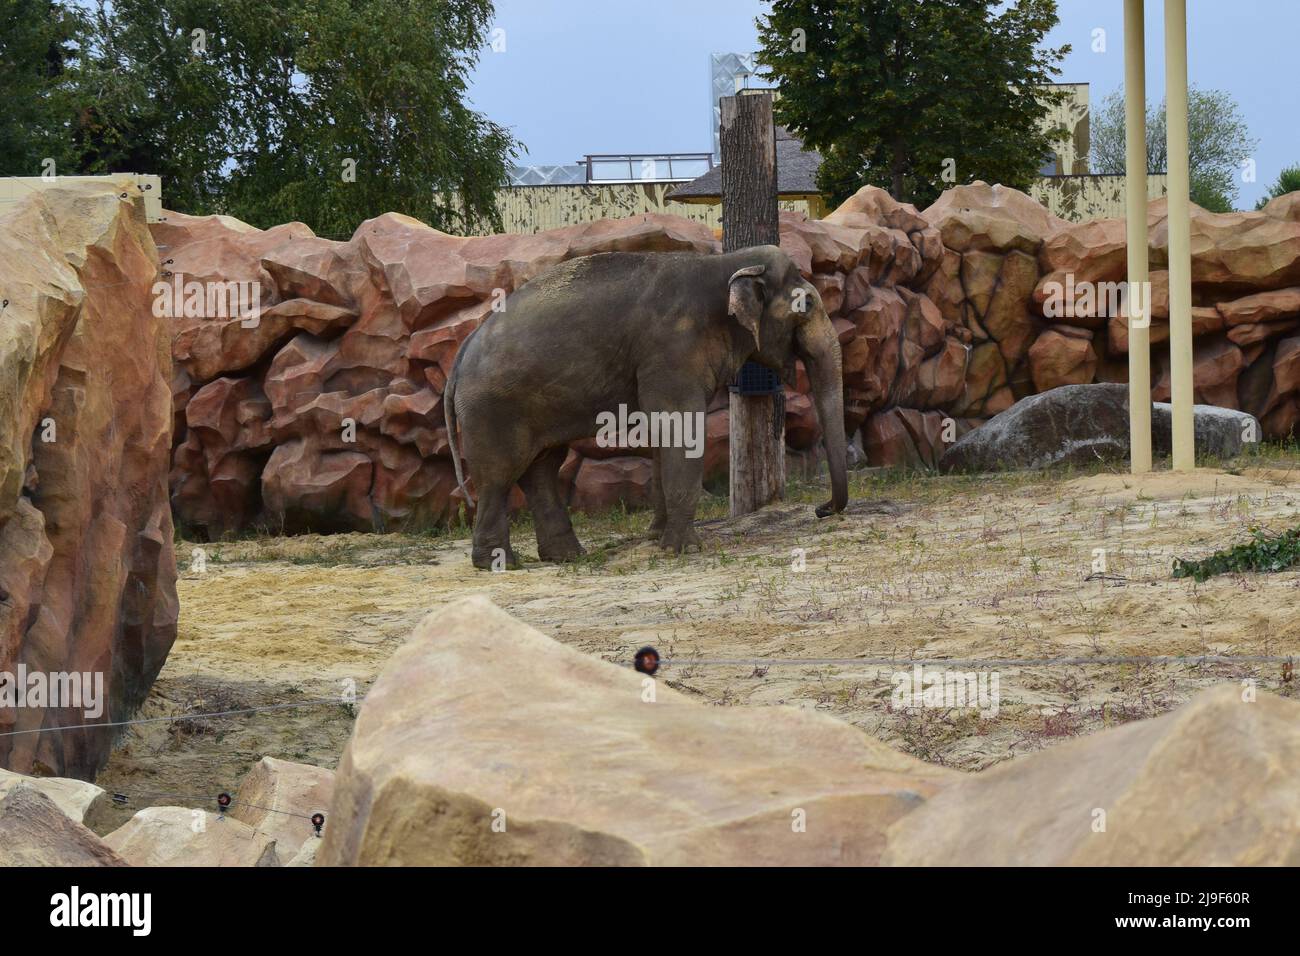 Elephant in a zoo. Asian Elephant, Elephas maximus. Big mammal in the zoo habitat. Stock Photo